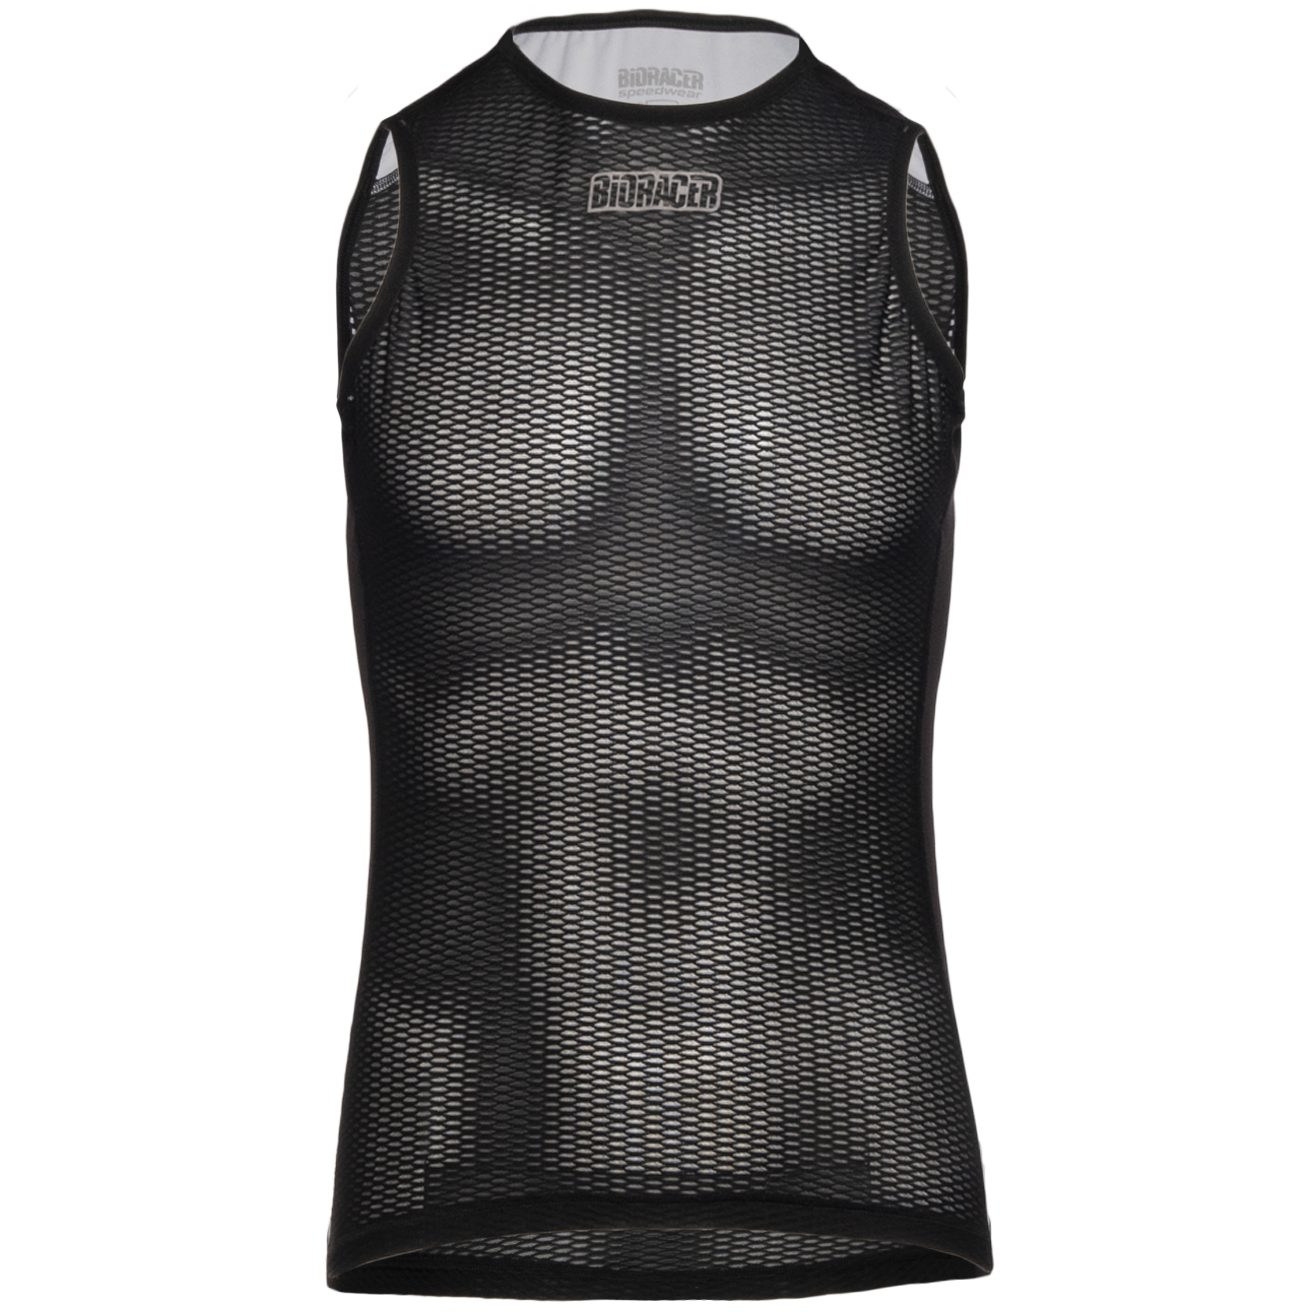 Produktbild von Bioracer Breeze Ärmelloses Unterhemd - schwarz